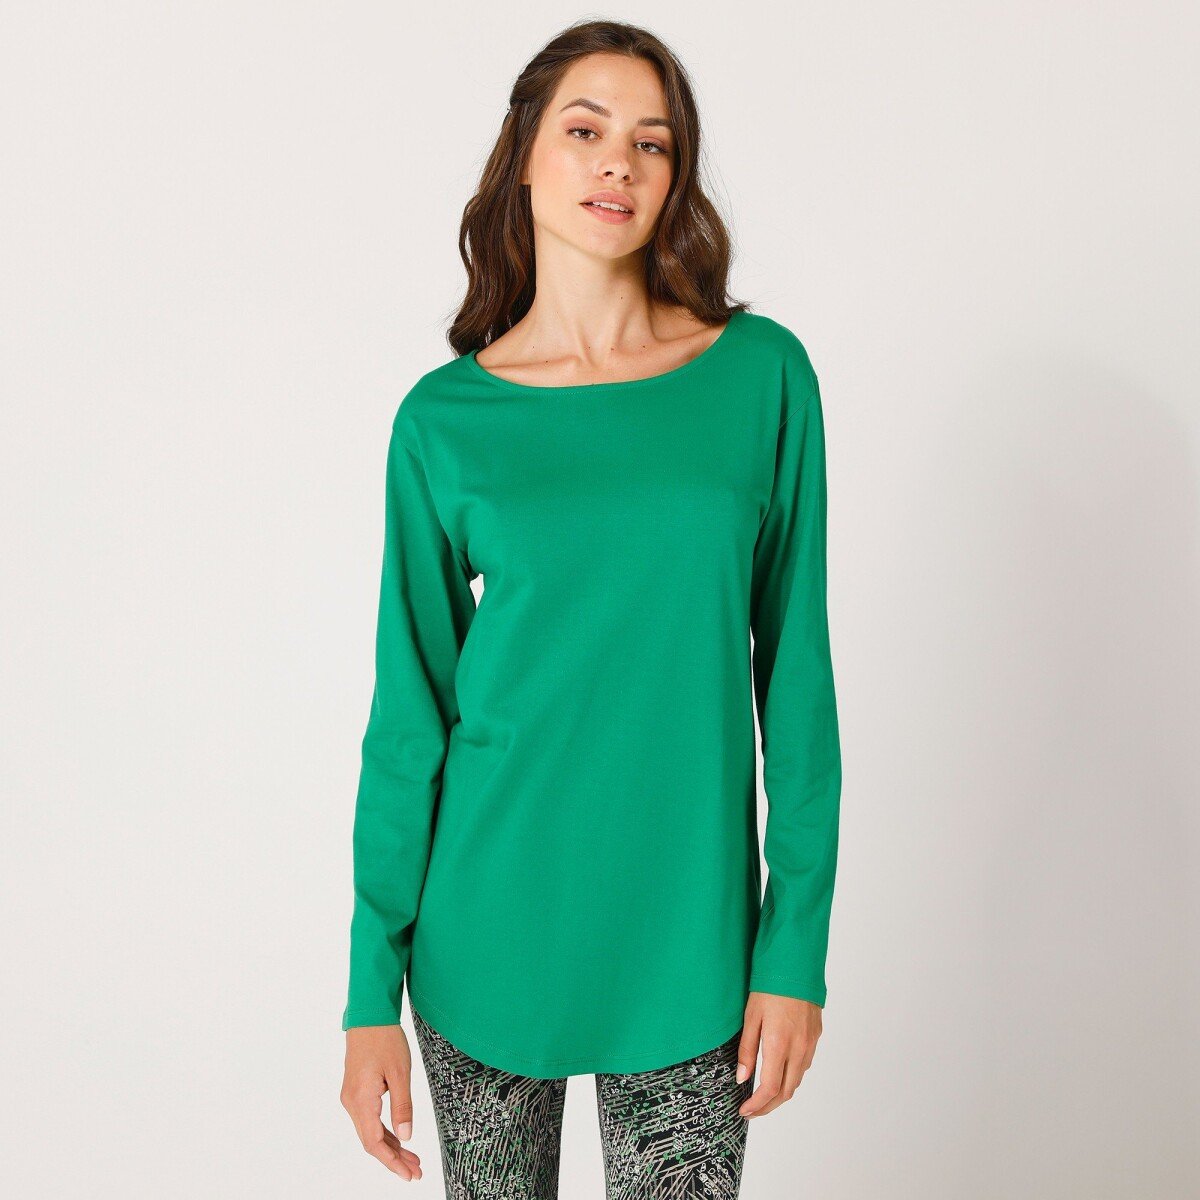 Jednofarebné tričko s dlhými rukávmi zelená 34 36